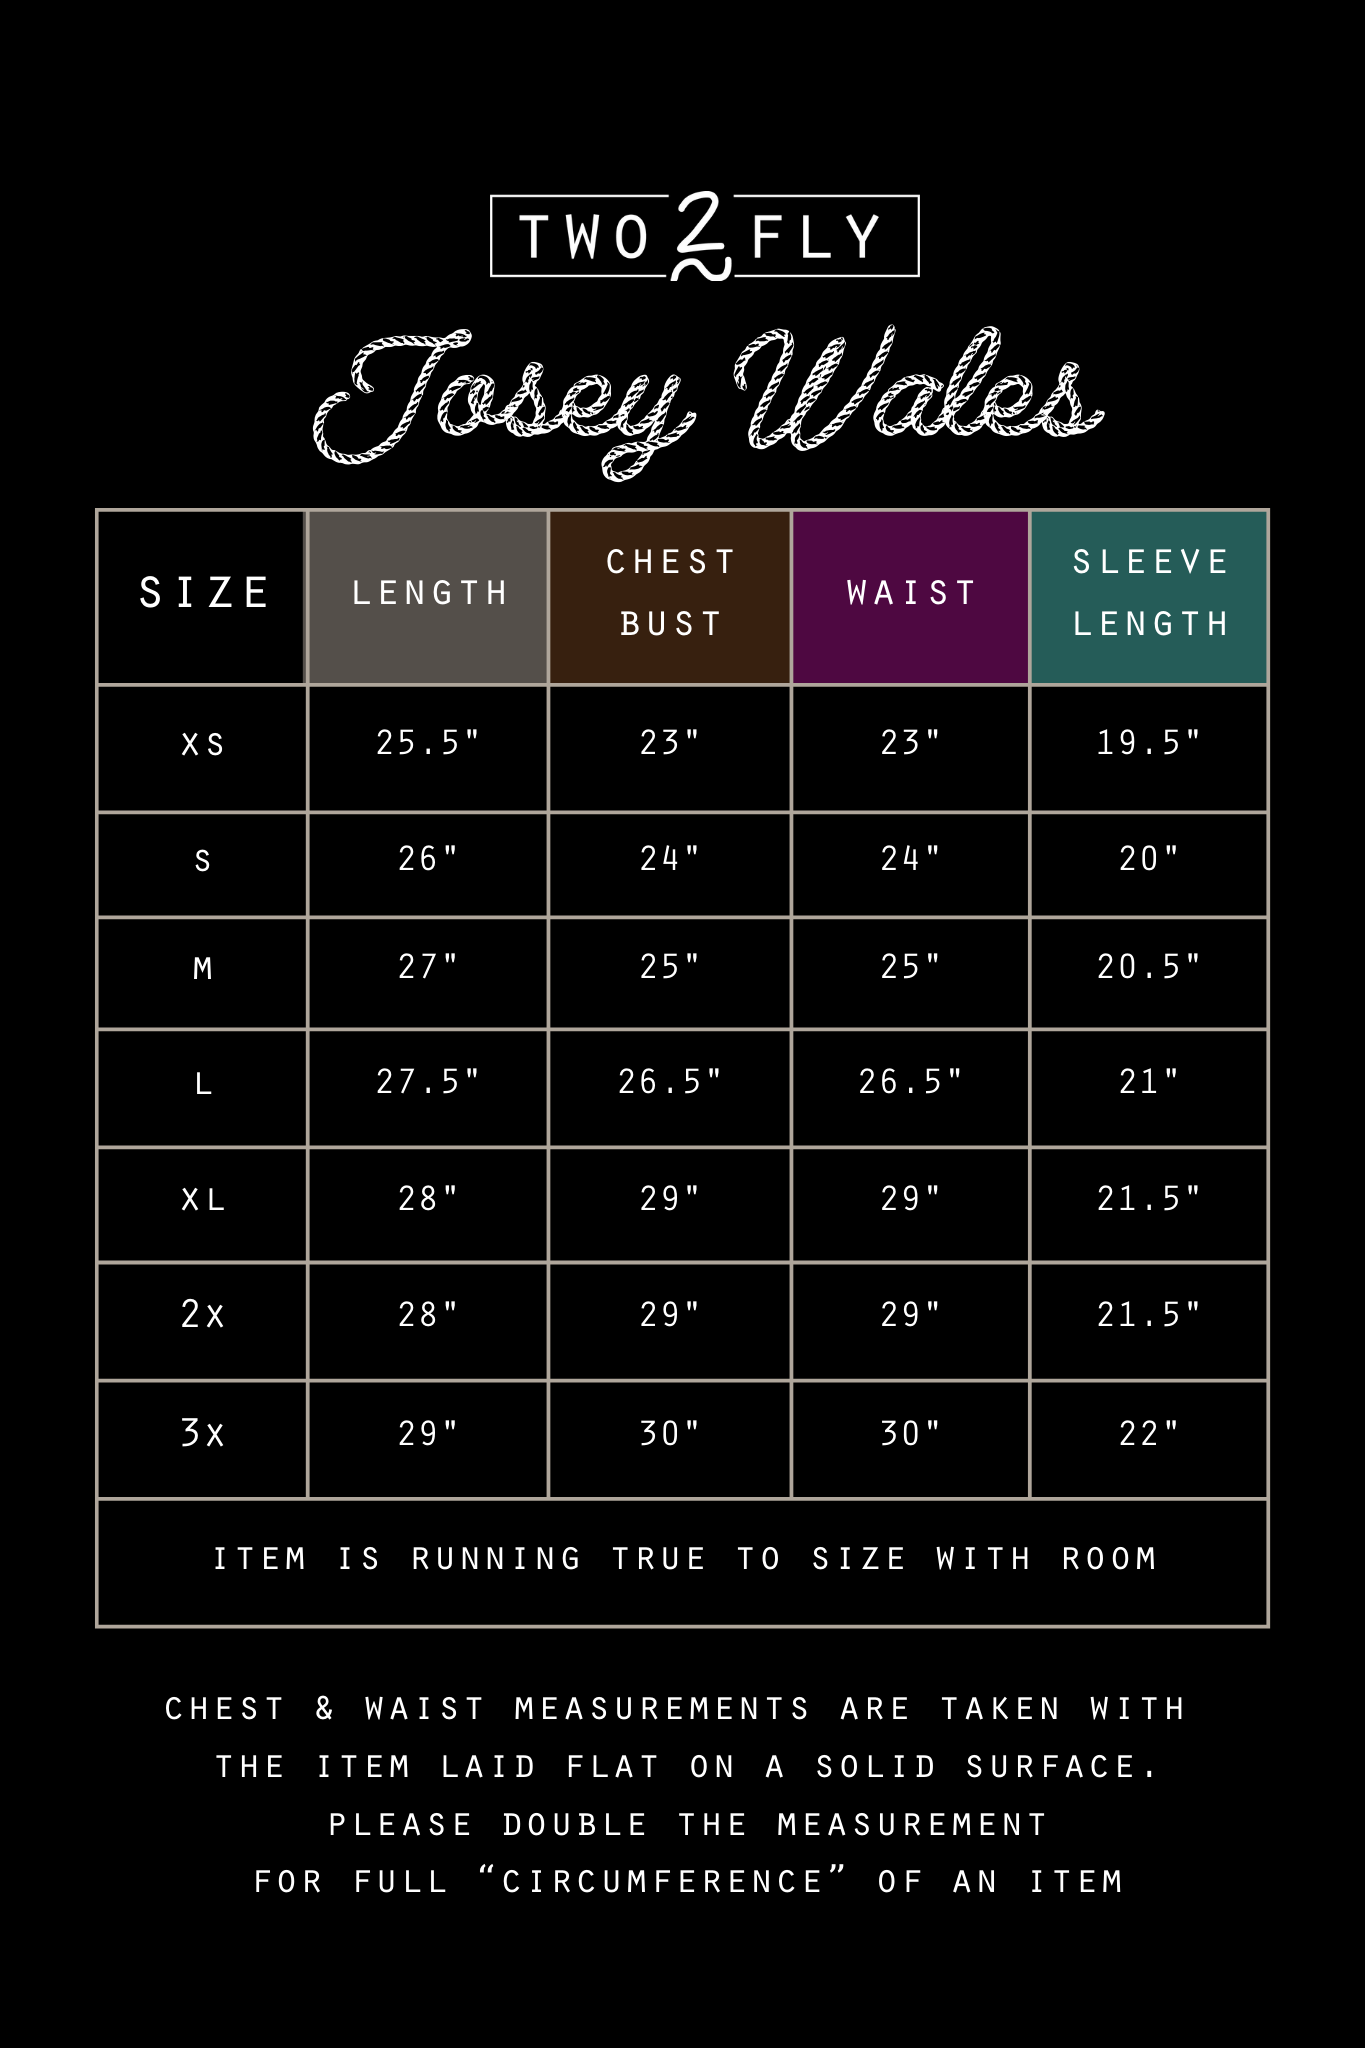 the Josey |Wales| half zip